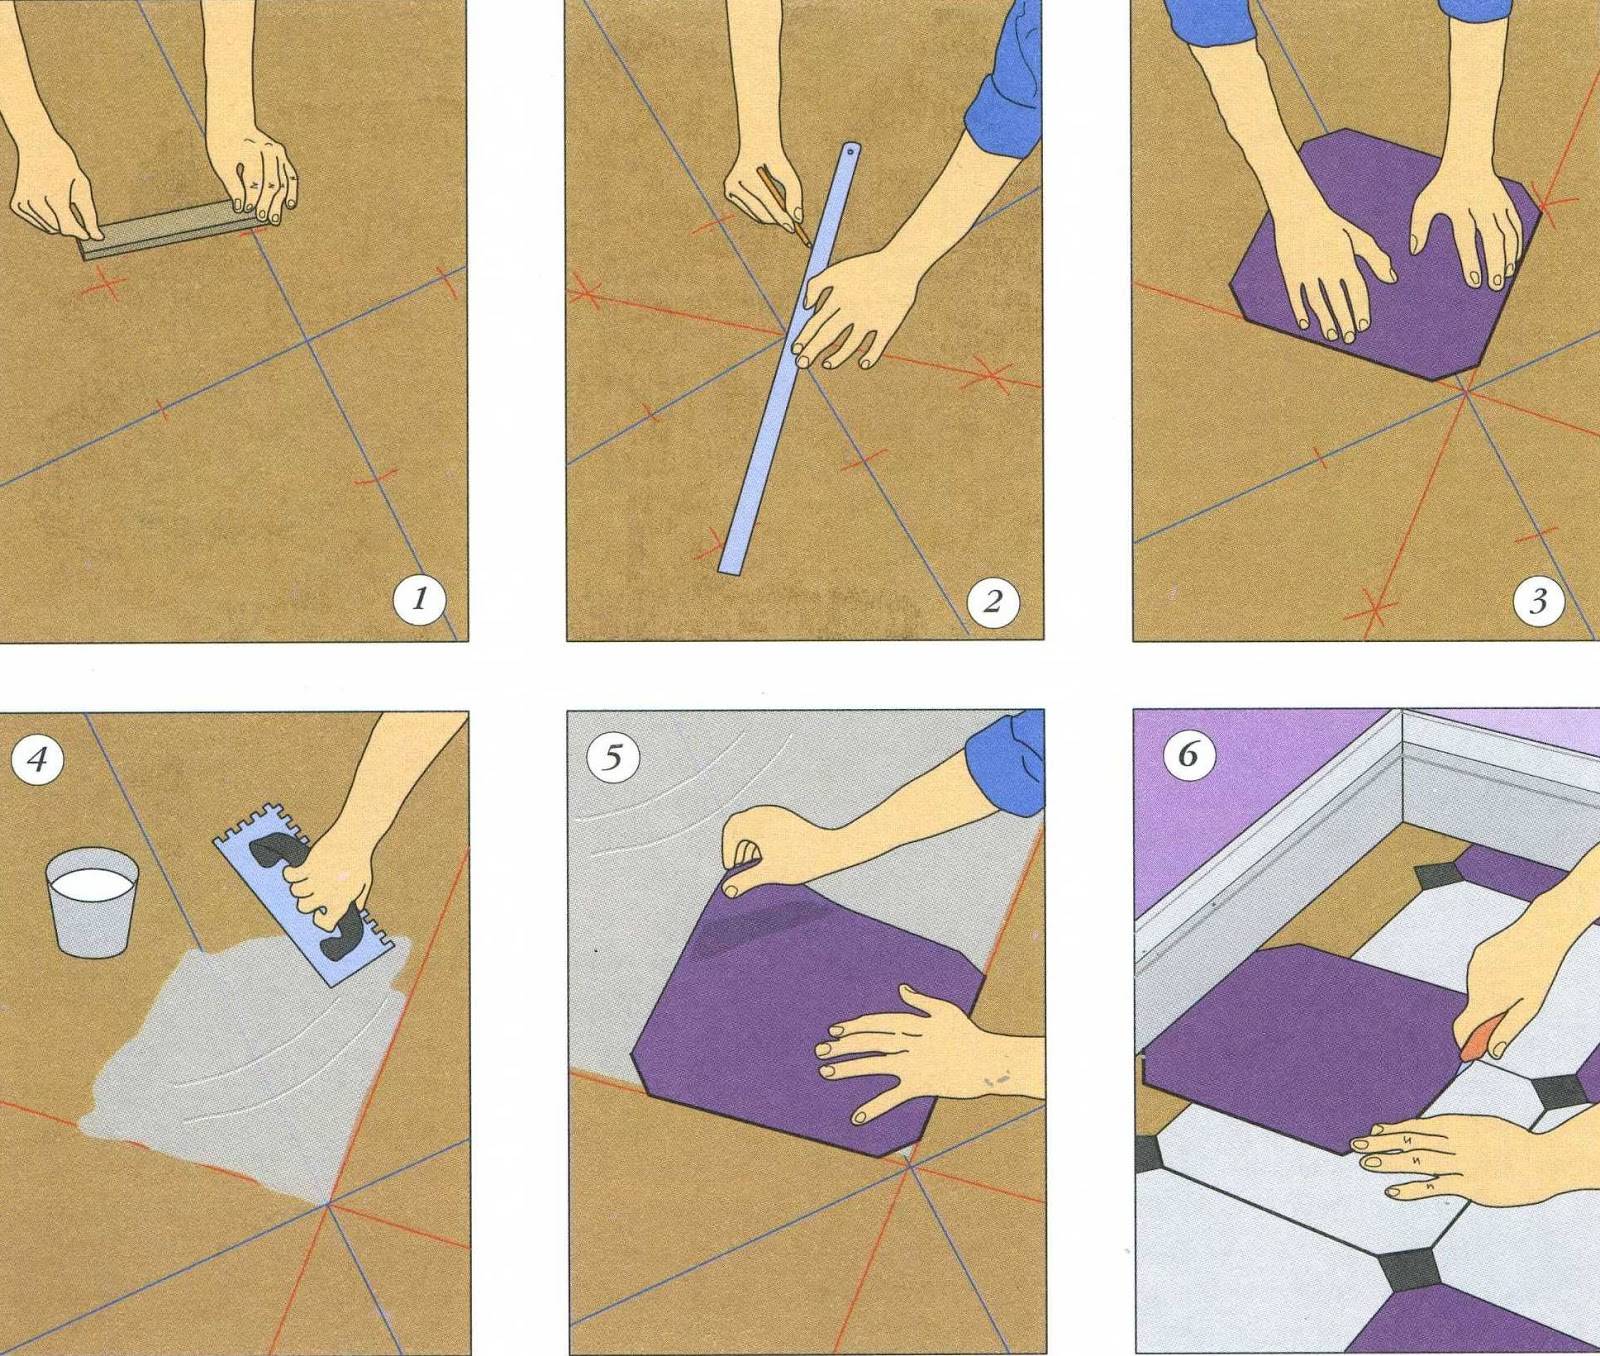 Укладка плитки на пол по диагонали своими руками: пошаговая инструкция